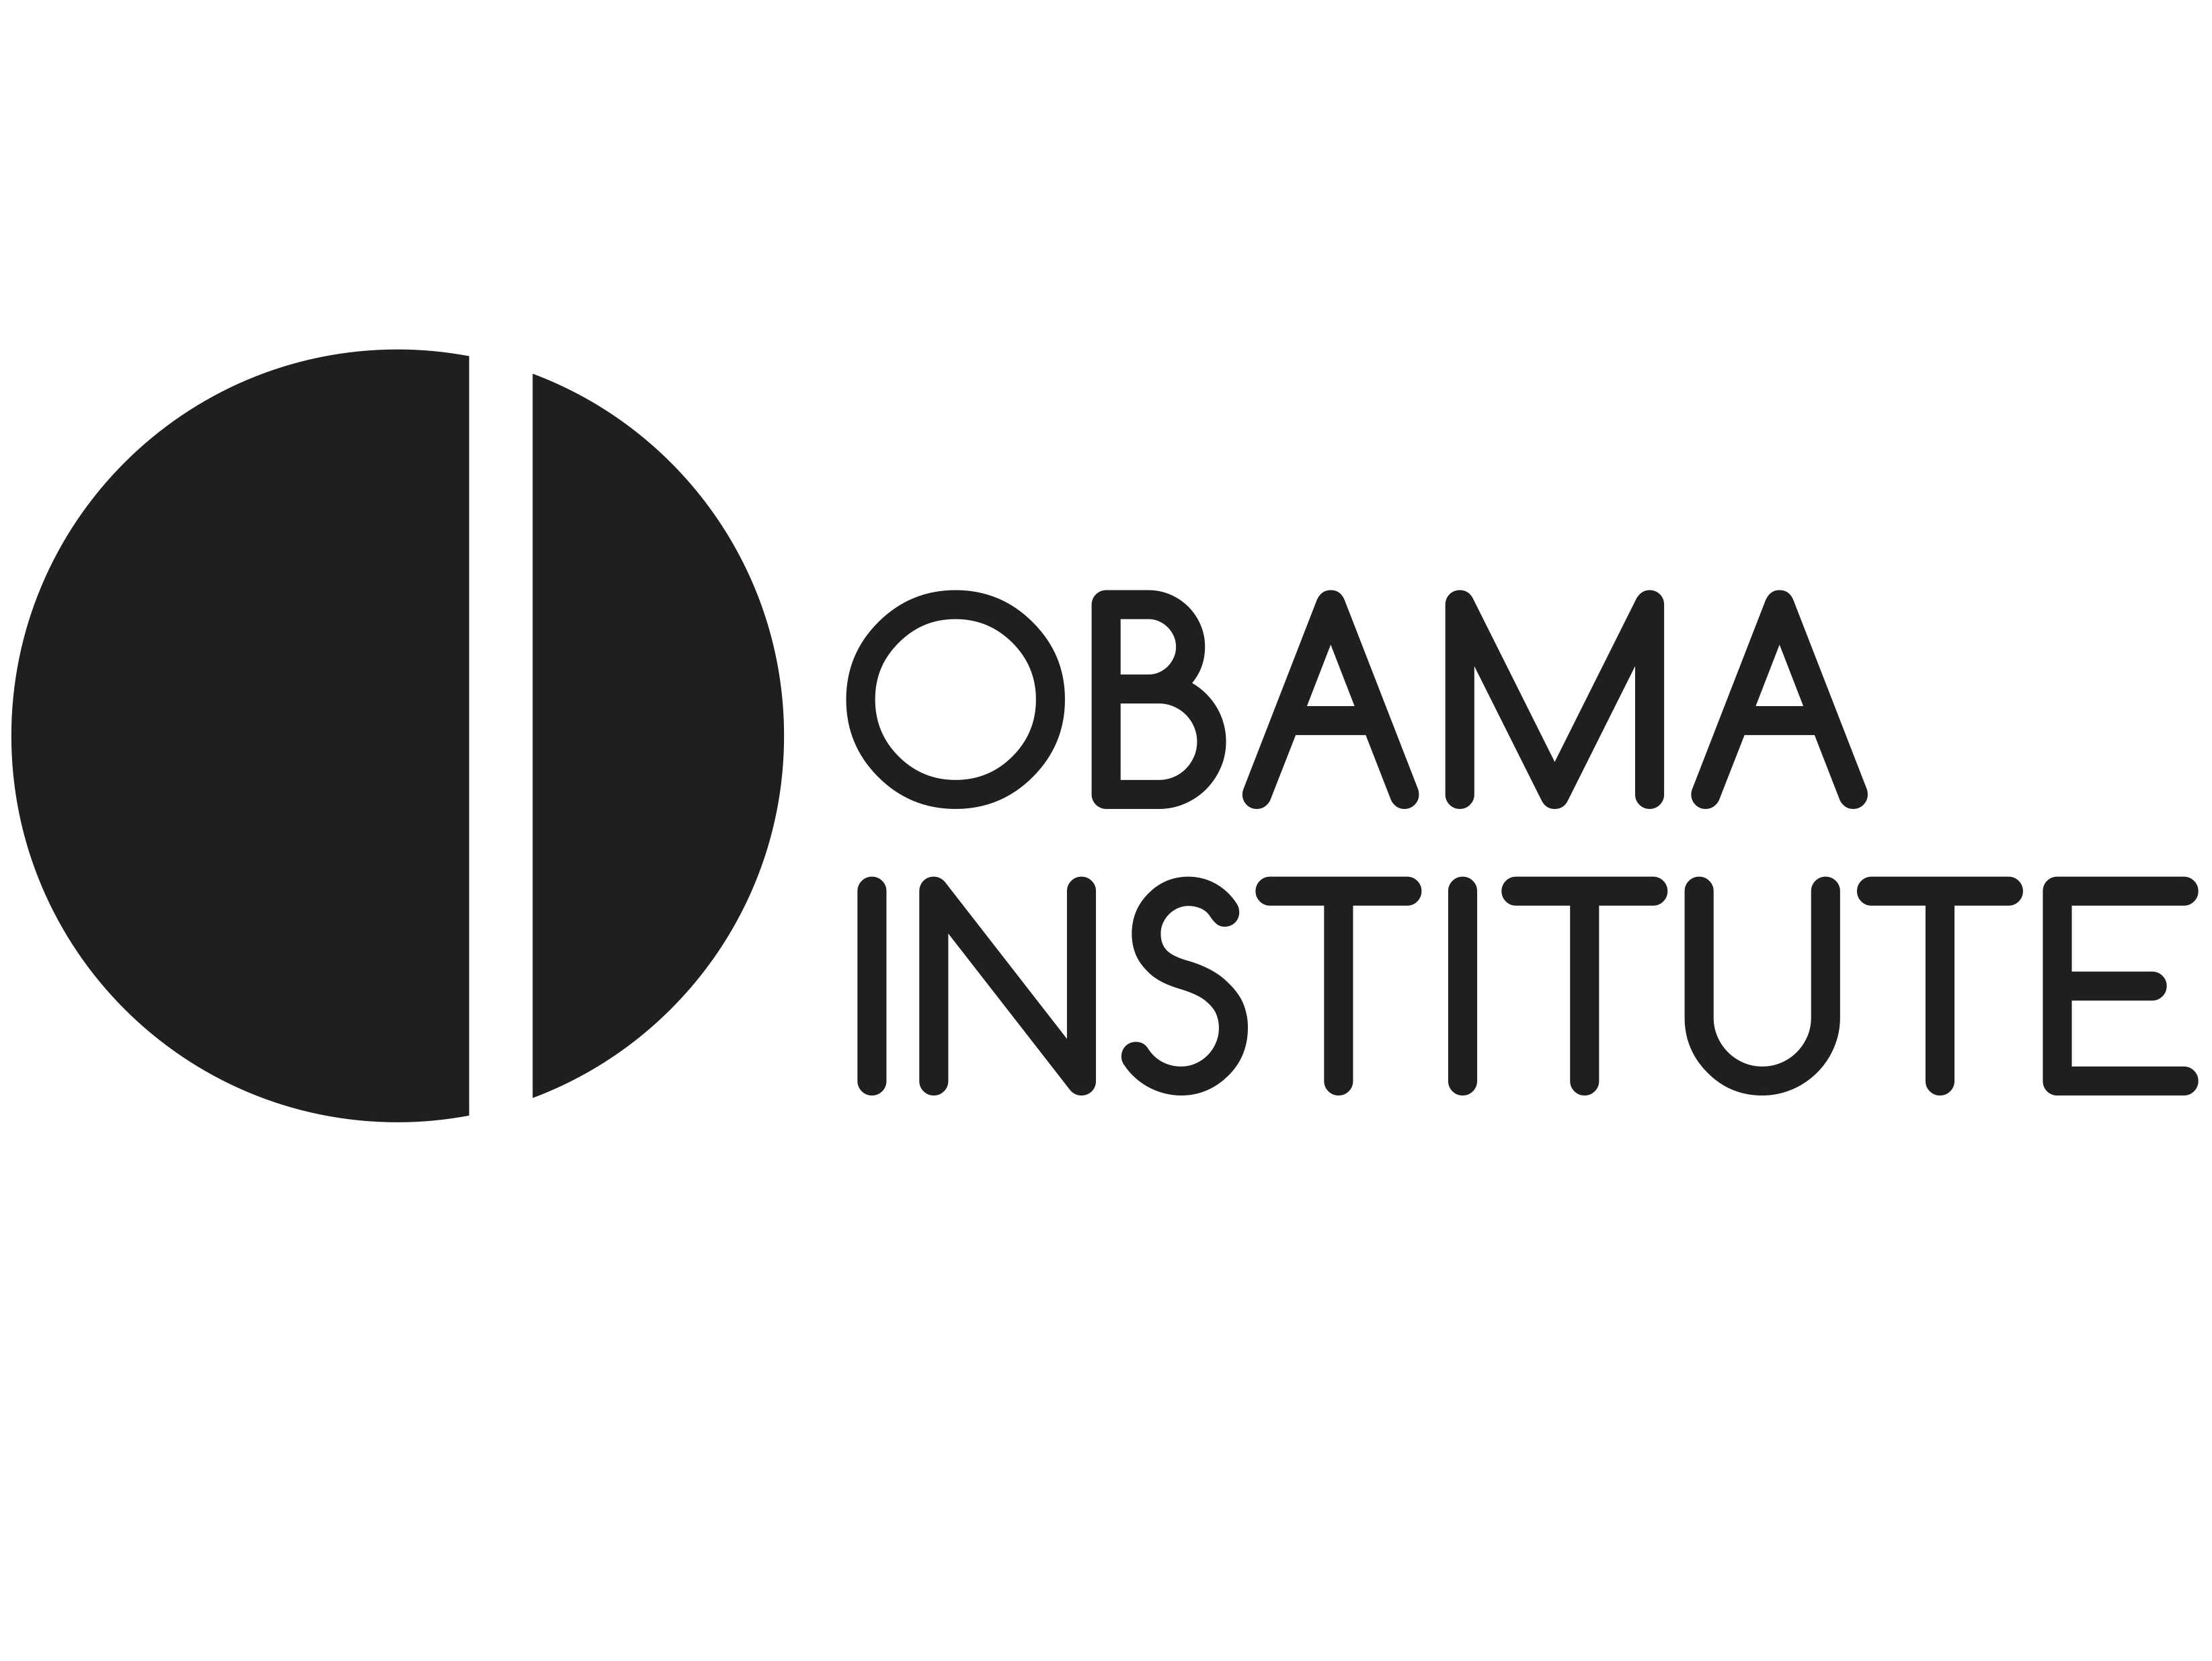 Obama Institute